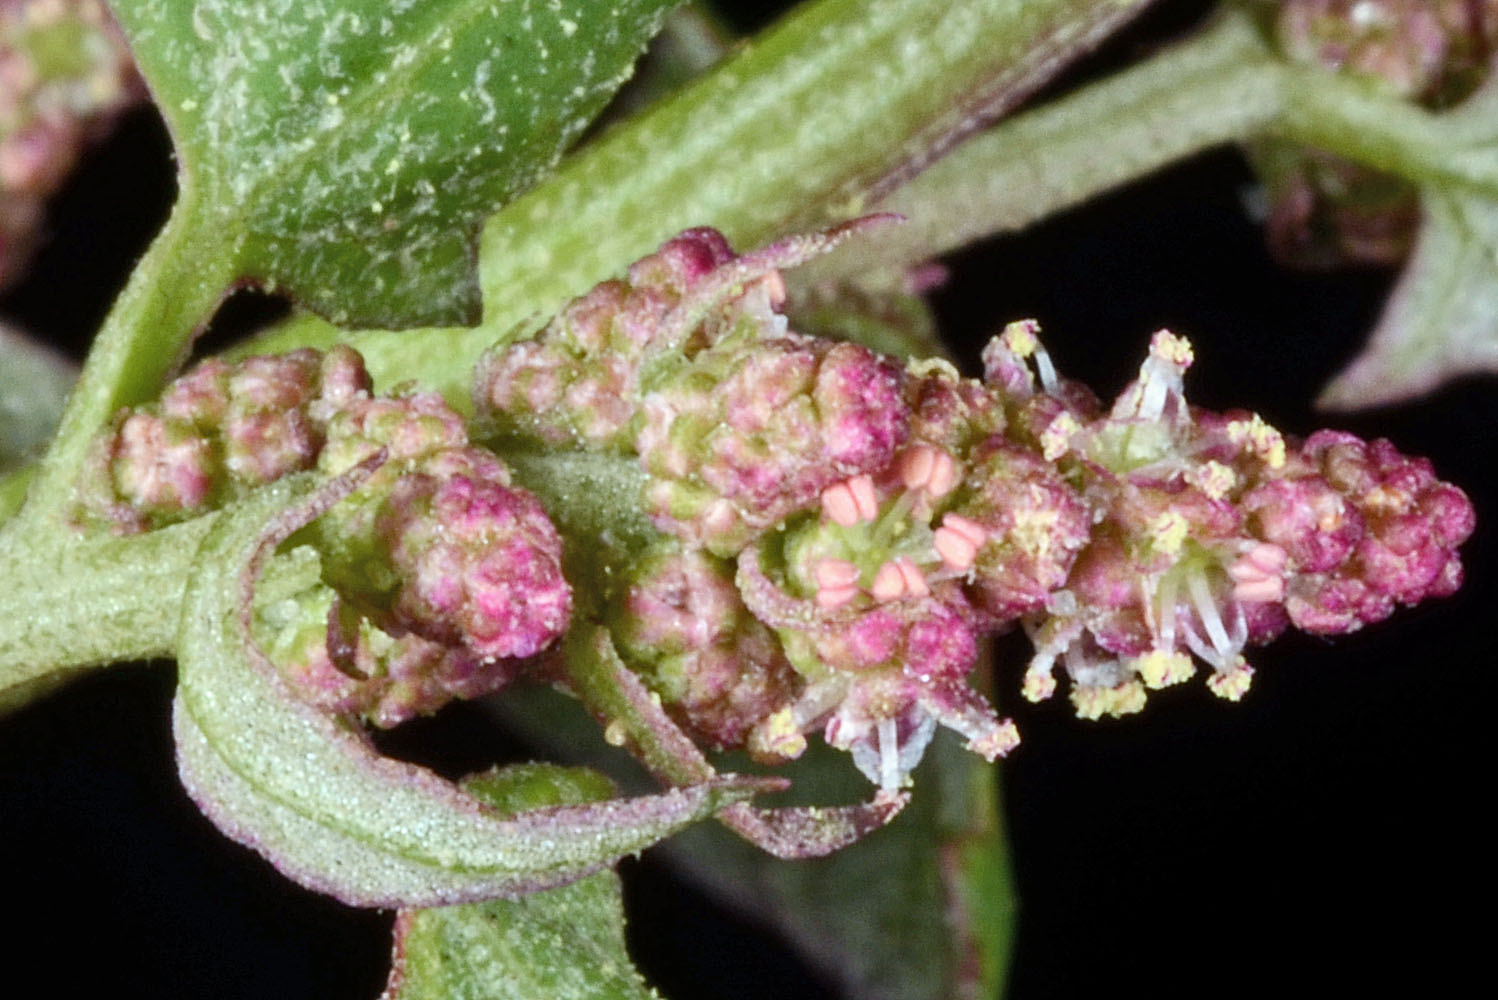 Flora of Eastern Washington Image: Atriplex prostrata